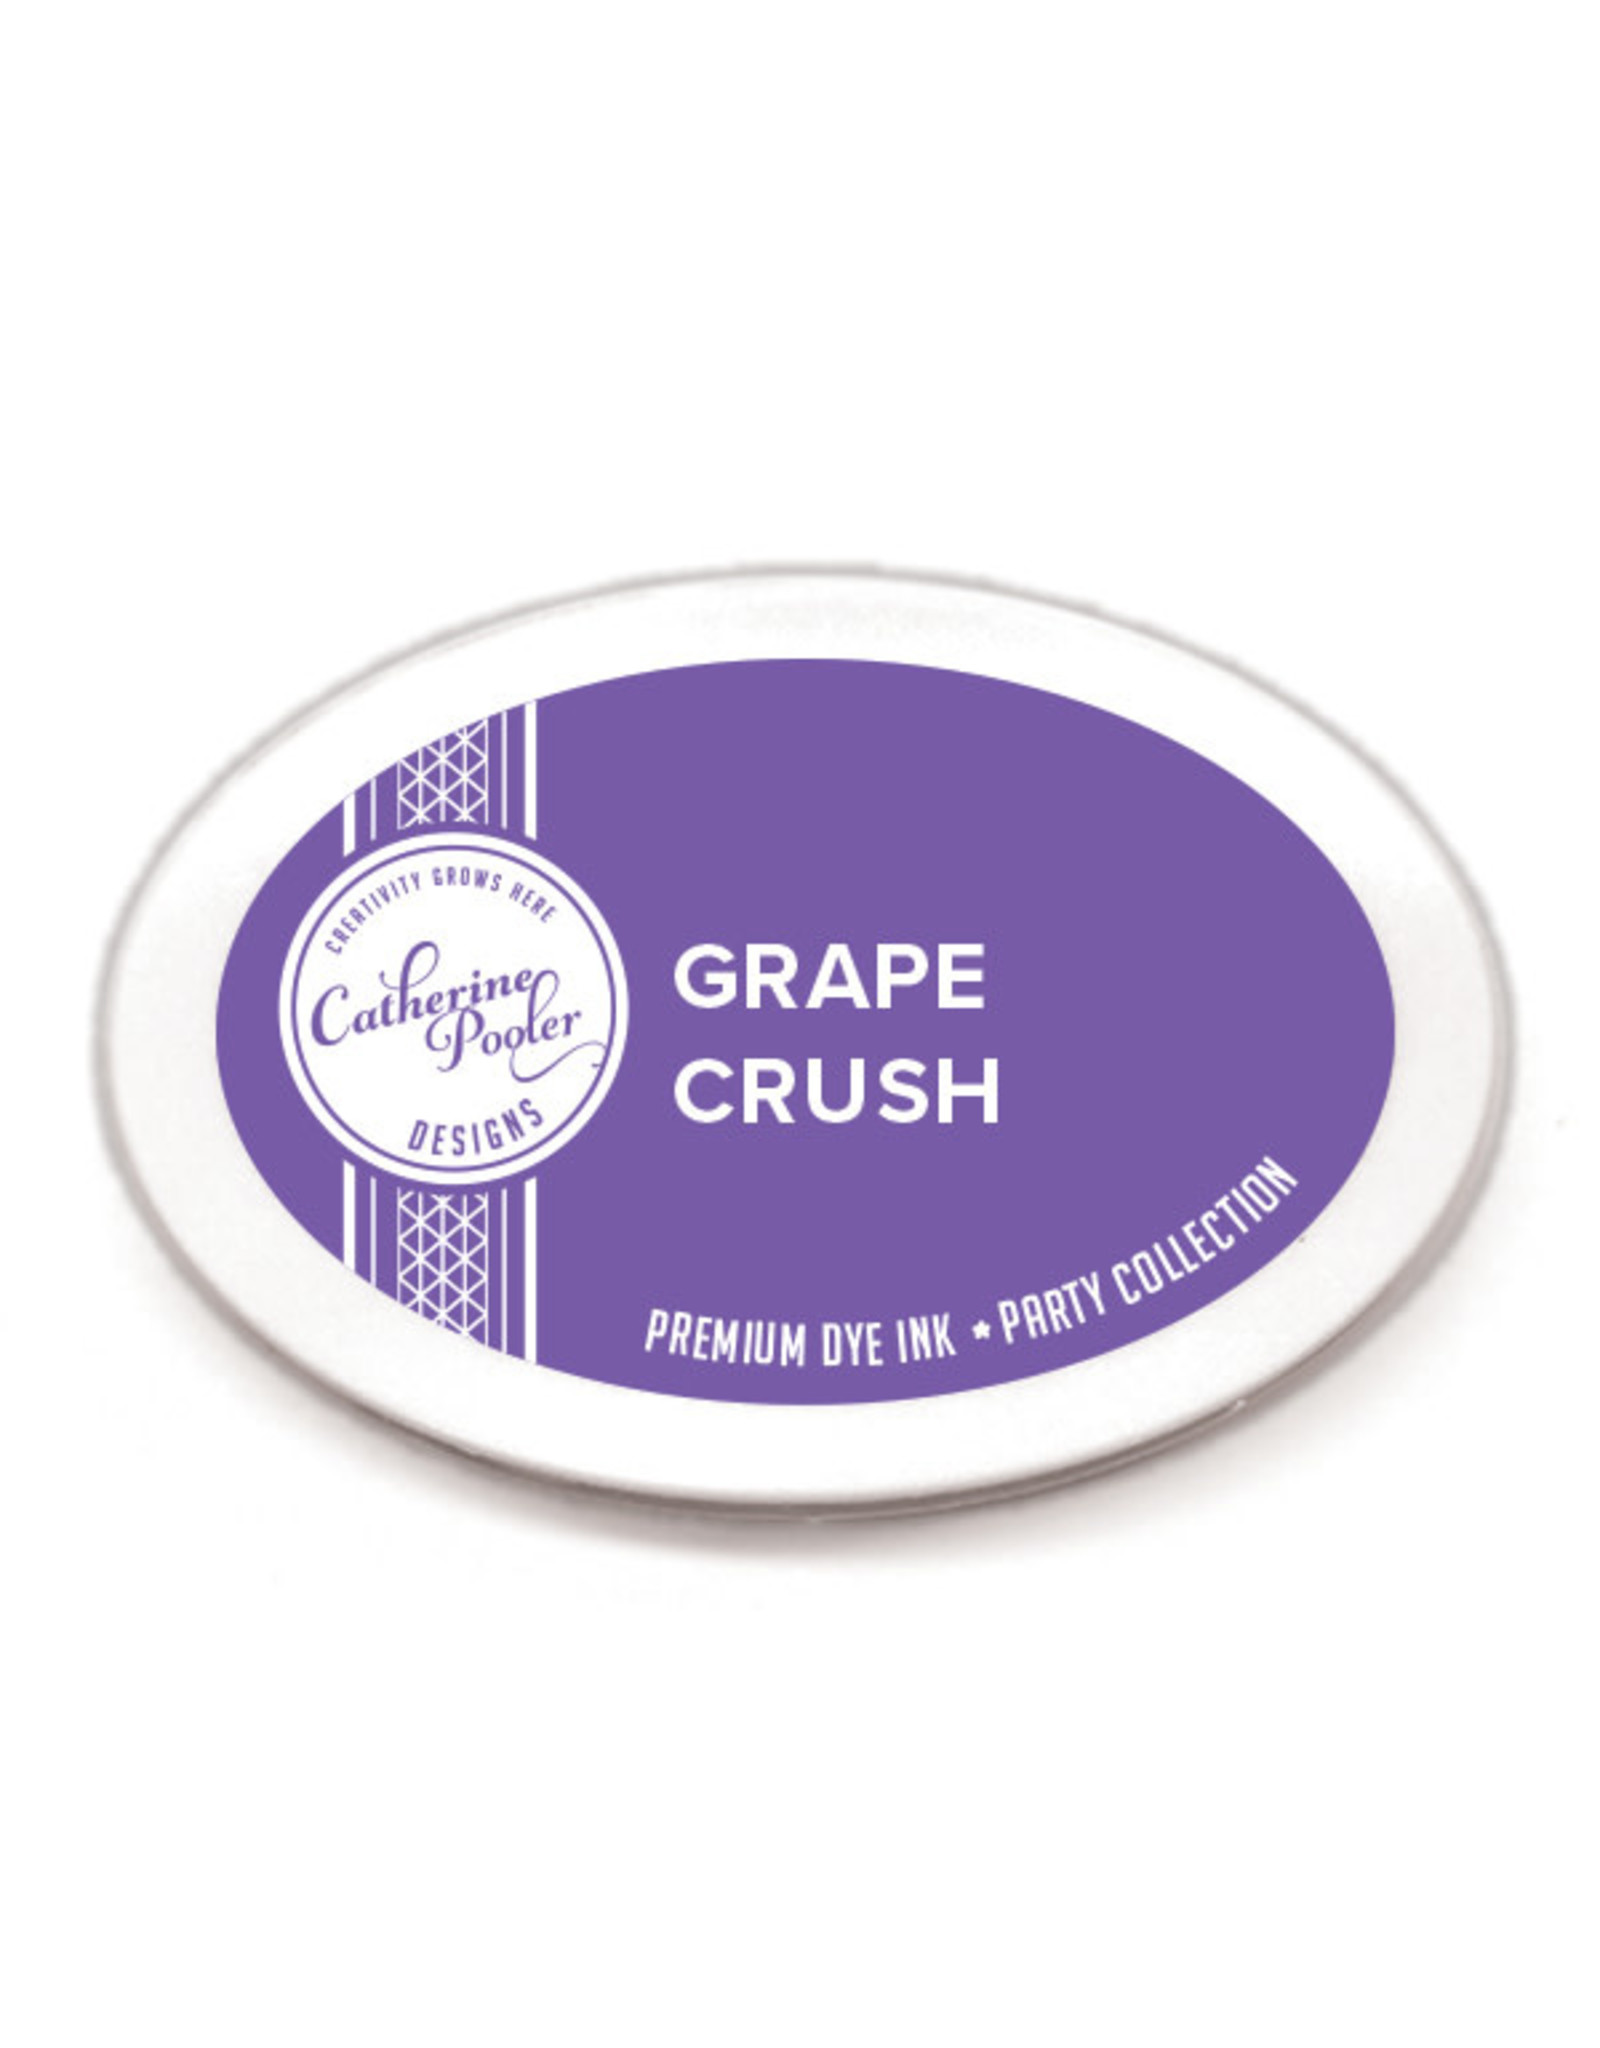 Catherine Pooler Designs Grape Crush Ink Pad